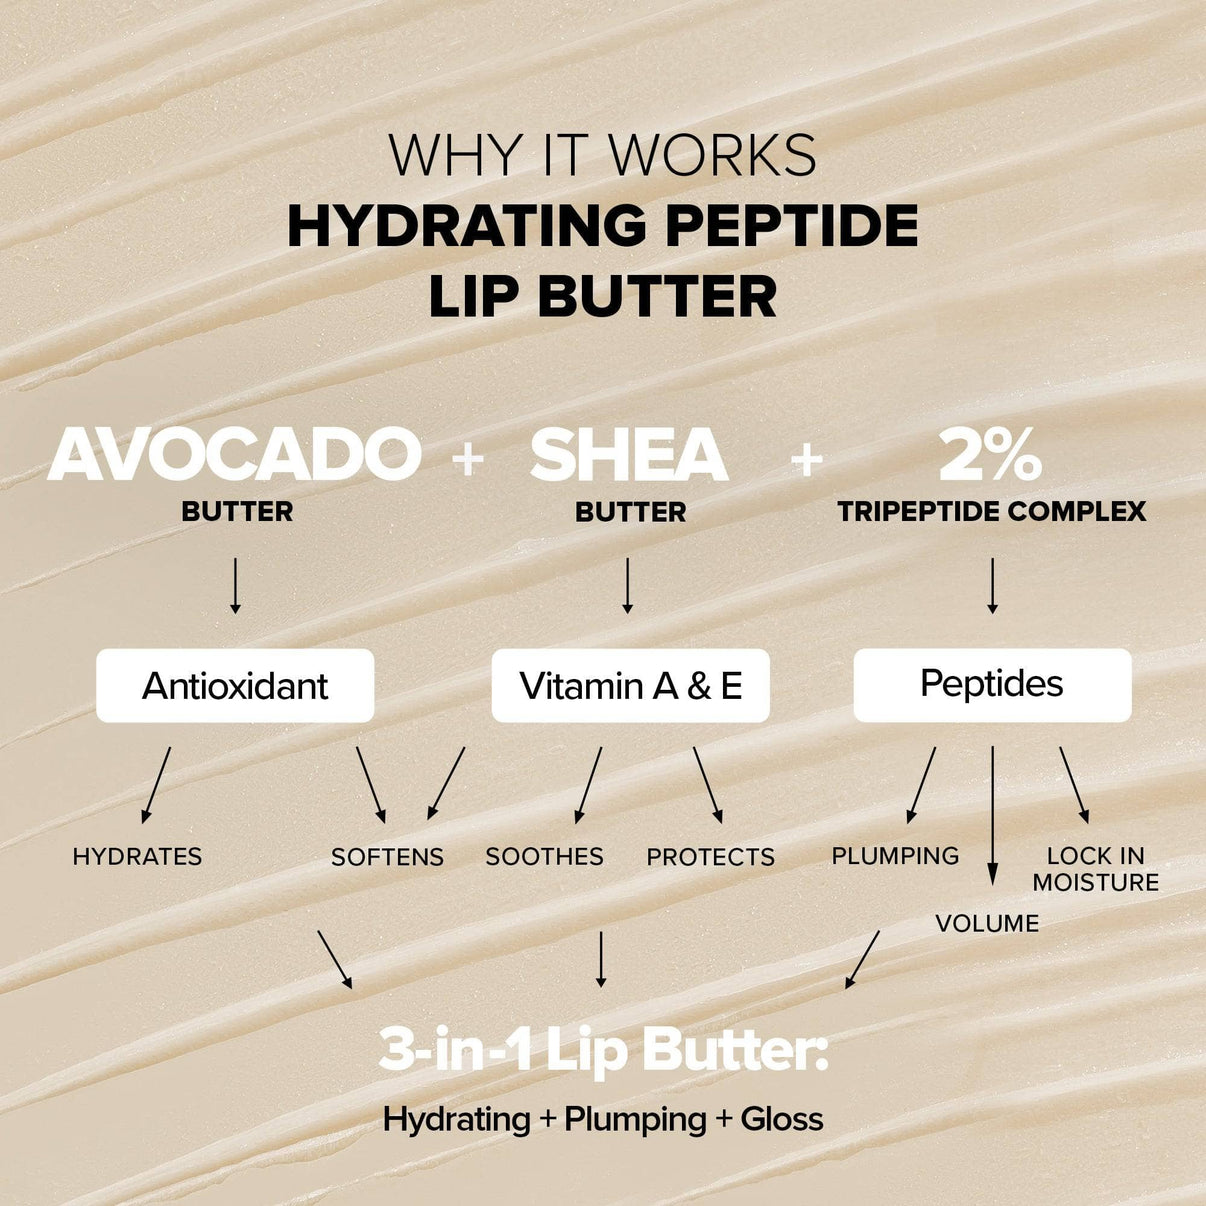 ヒドラ ペプチド リップ バター 2 ピース キット、その効果と成分の説明